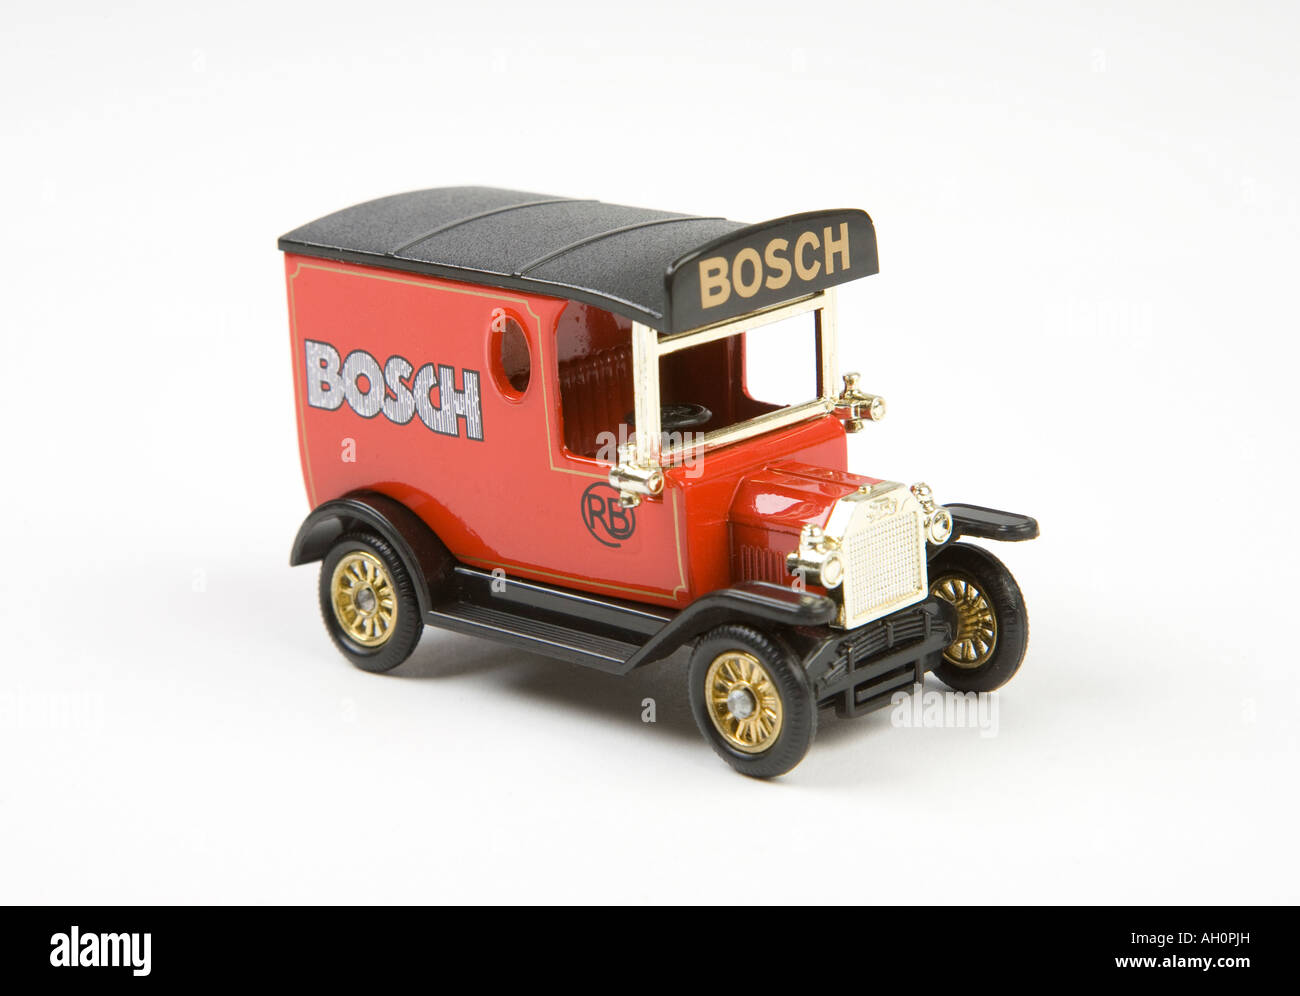 Modelo a escala de juguete antiguo estilo entrega van con el logotipo de Bosch Foto de stock